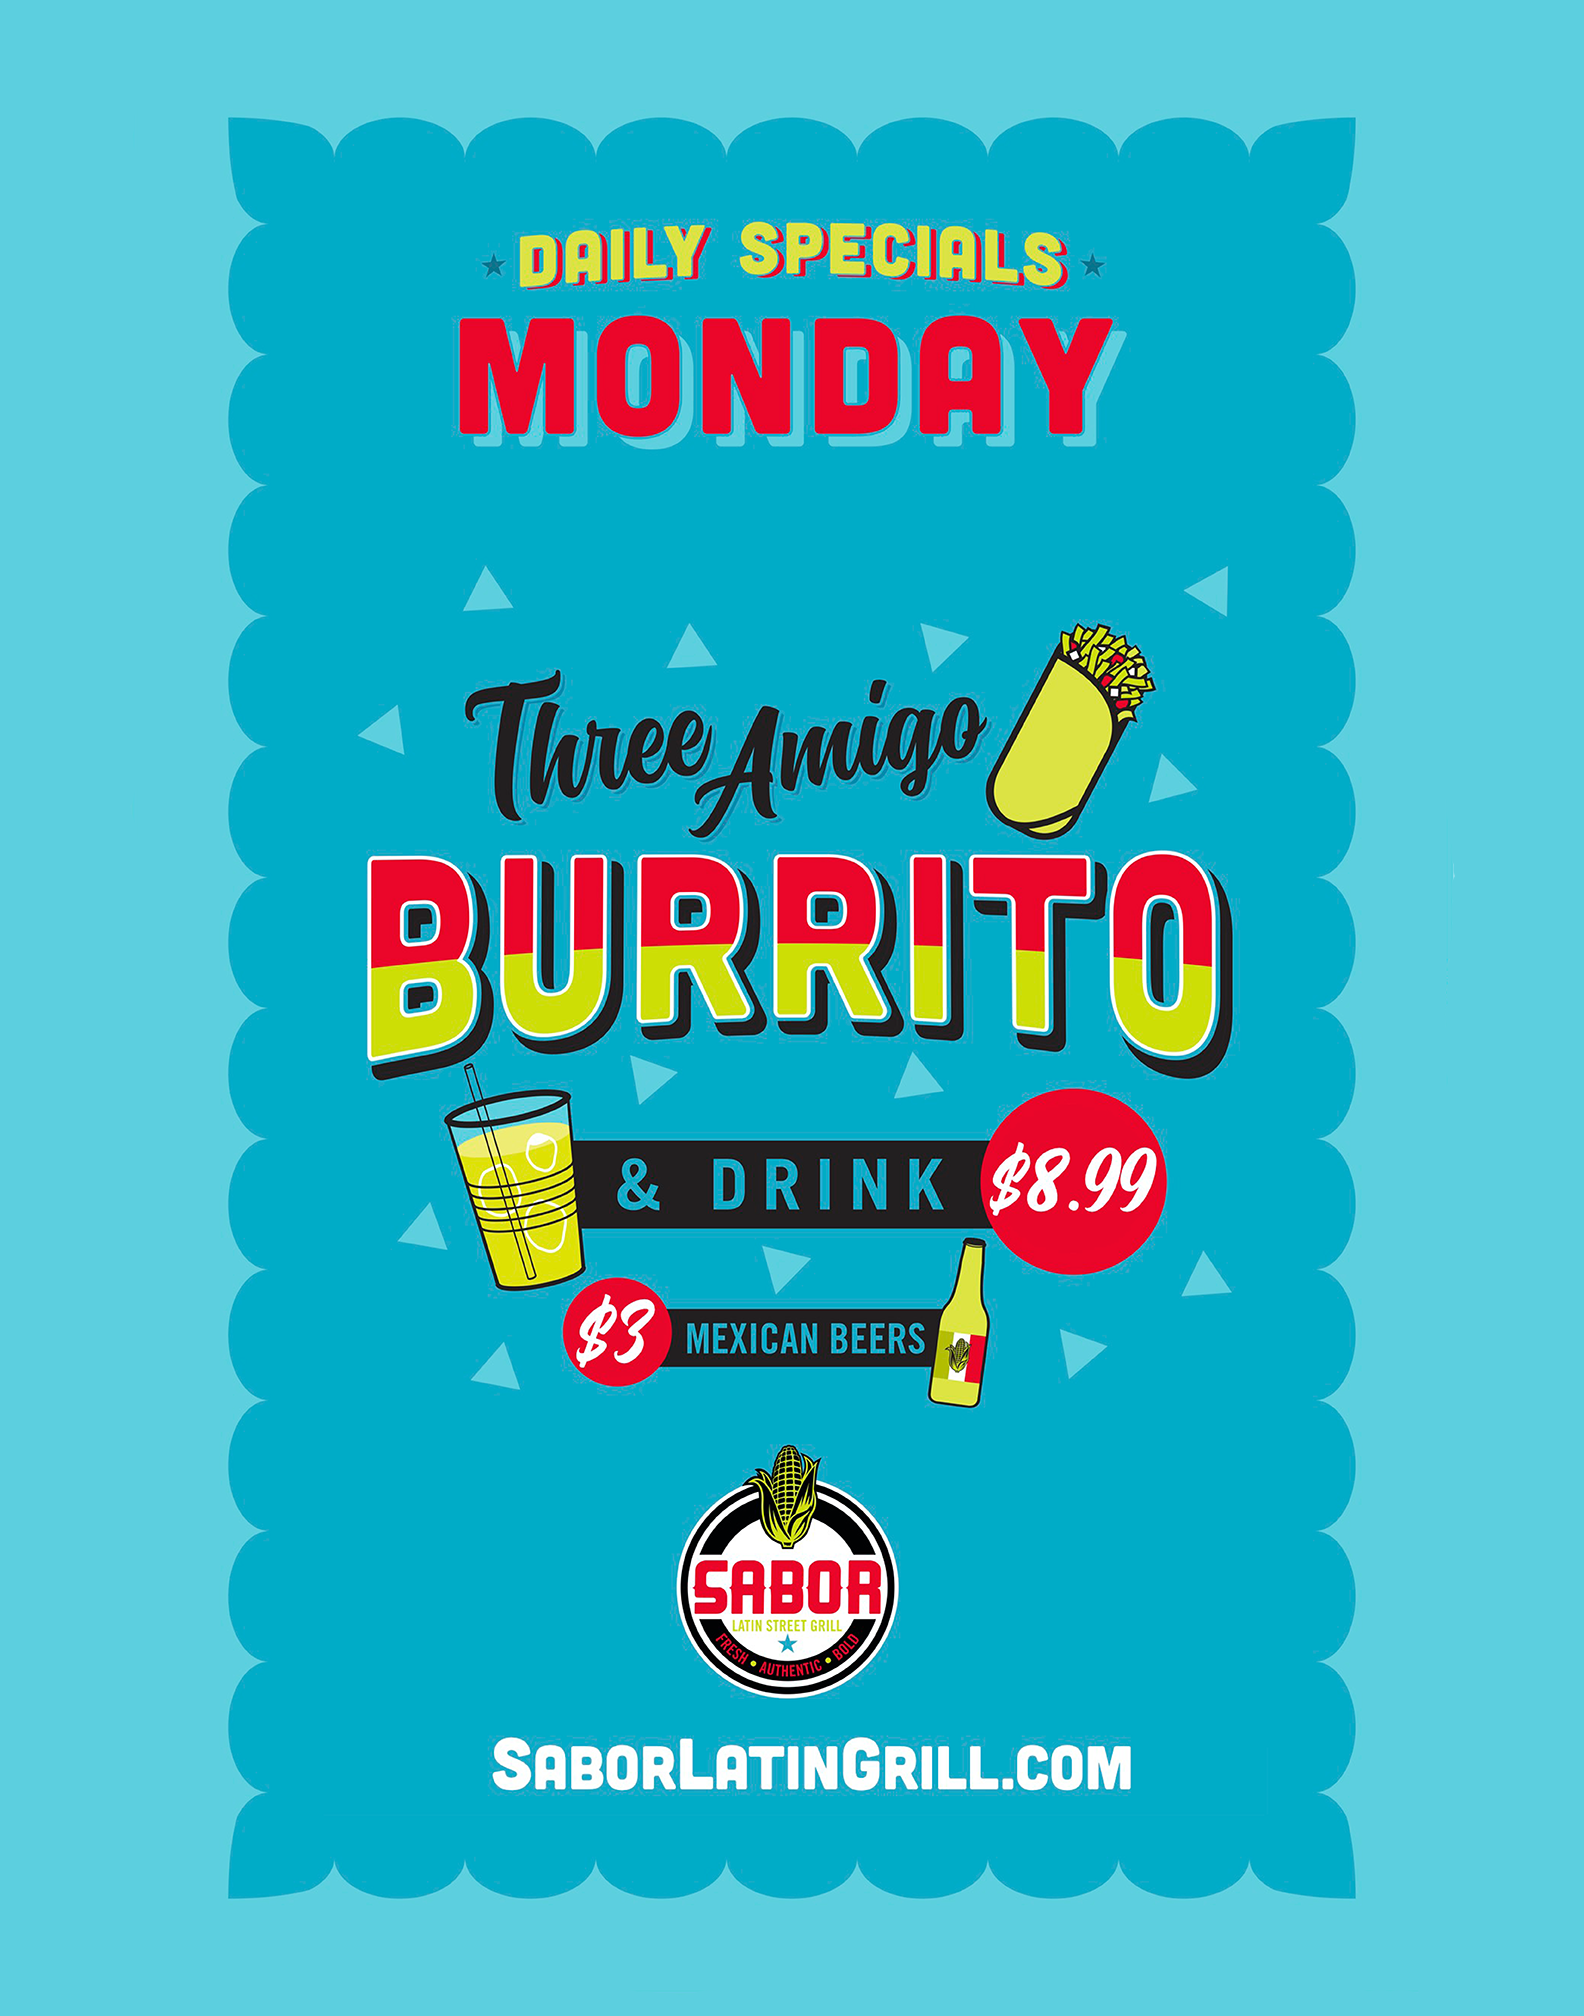 Mondays -  $8.99 Three Amigo Burrito. $3 Mexican Beers.